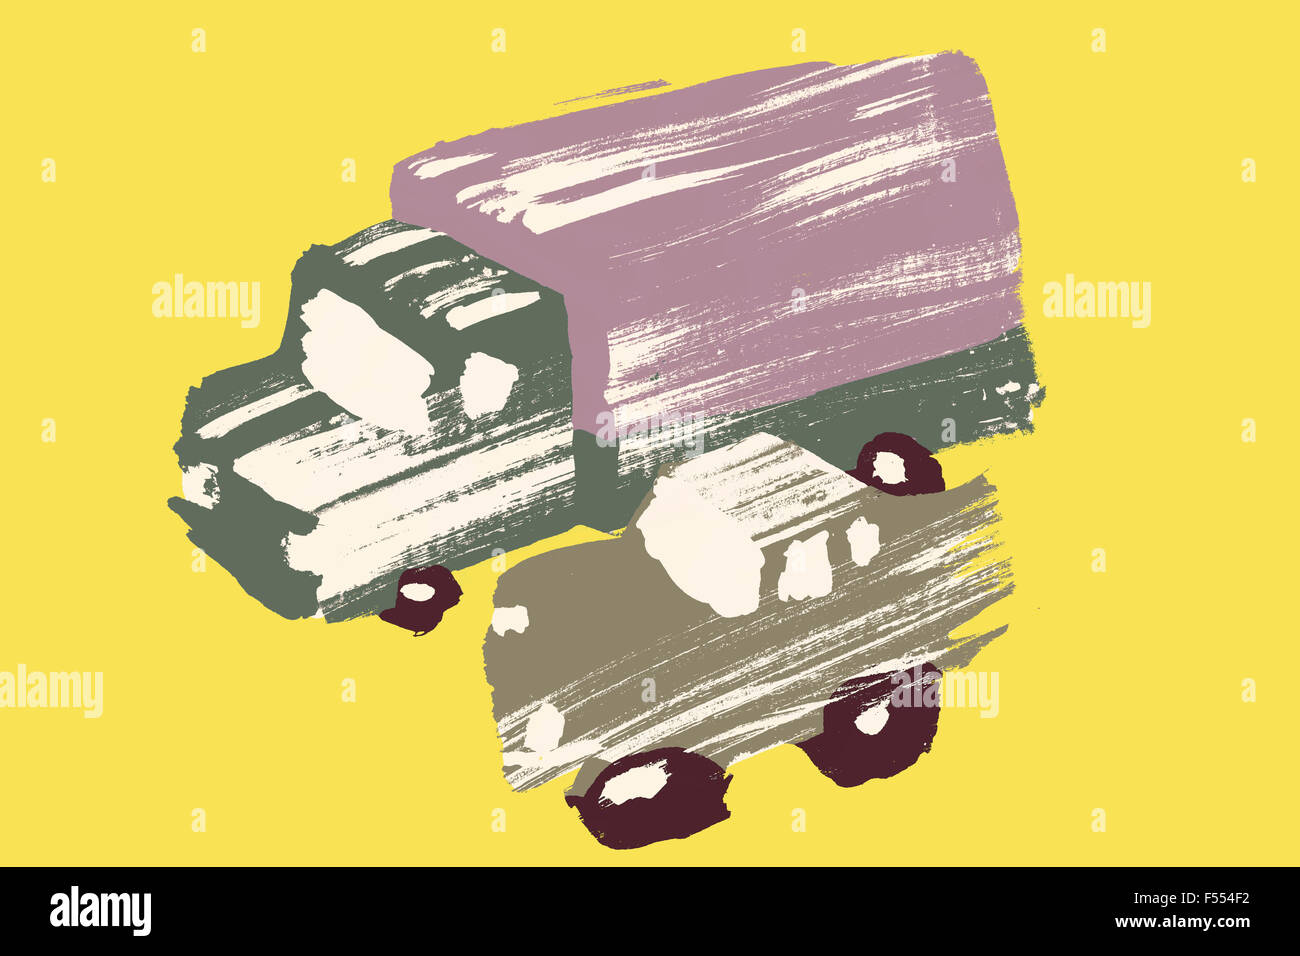 Image d'illustration de camion et voiture contre fond jaune Banque D'Images